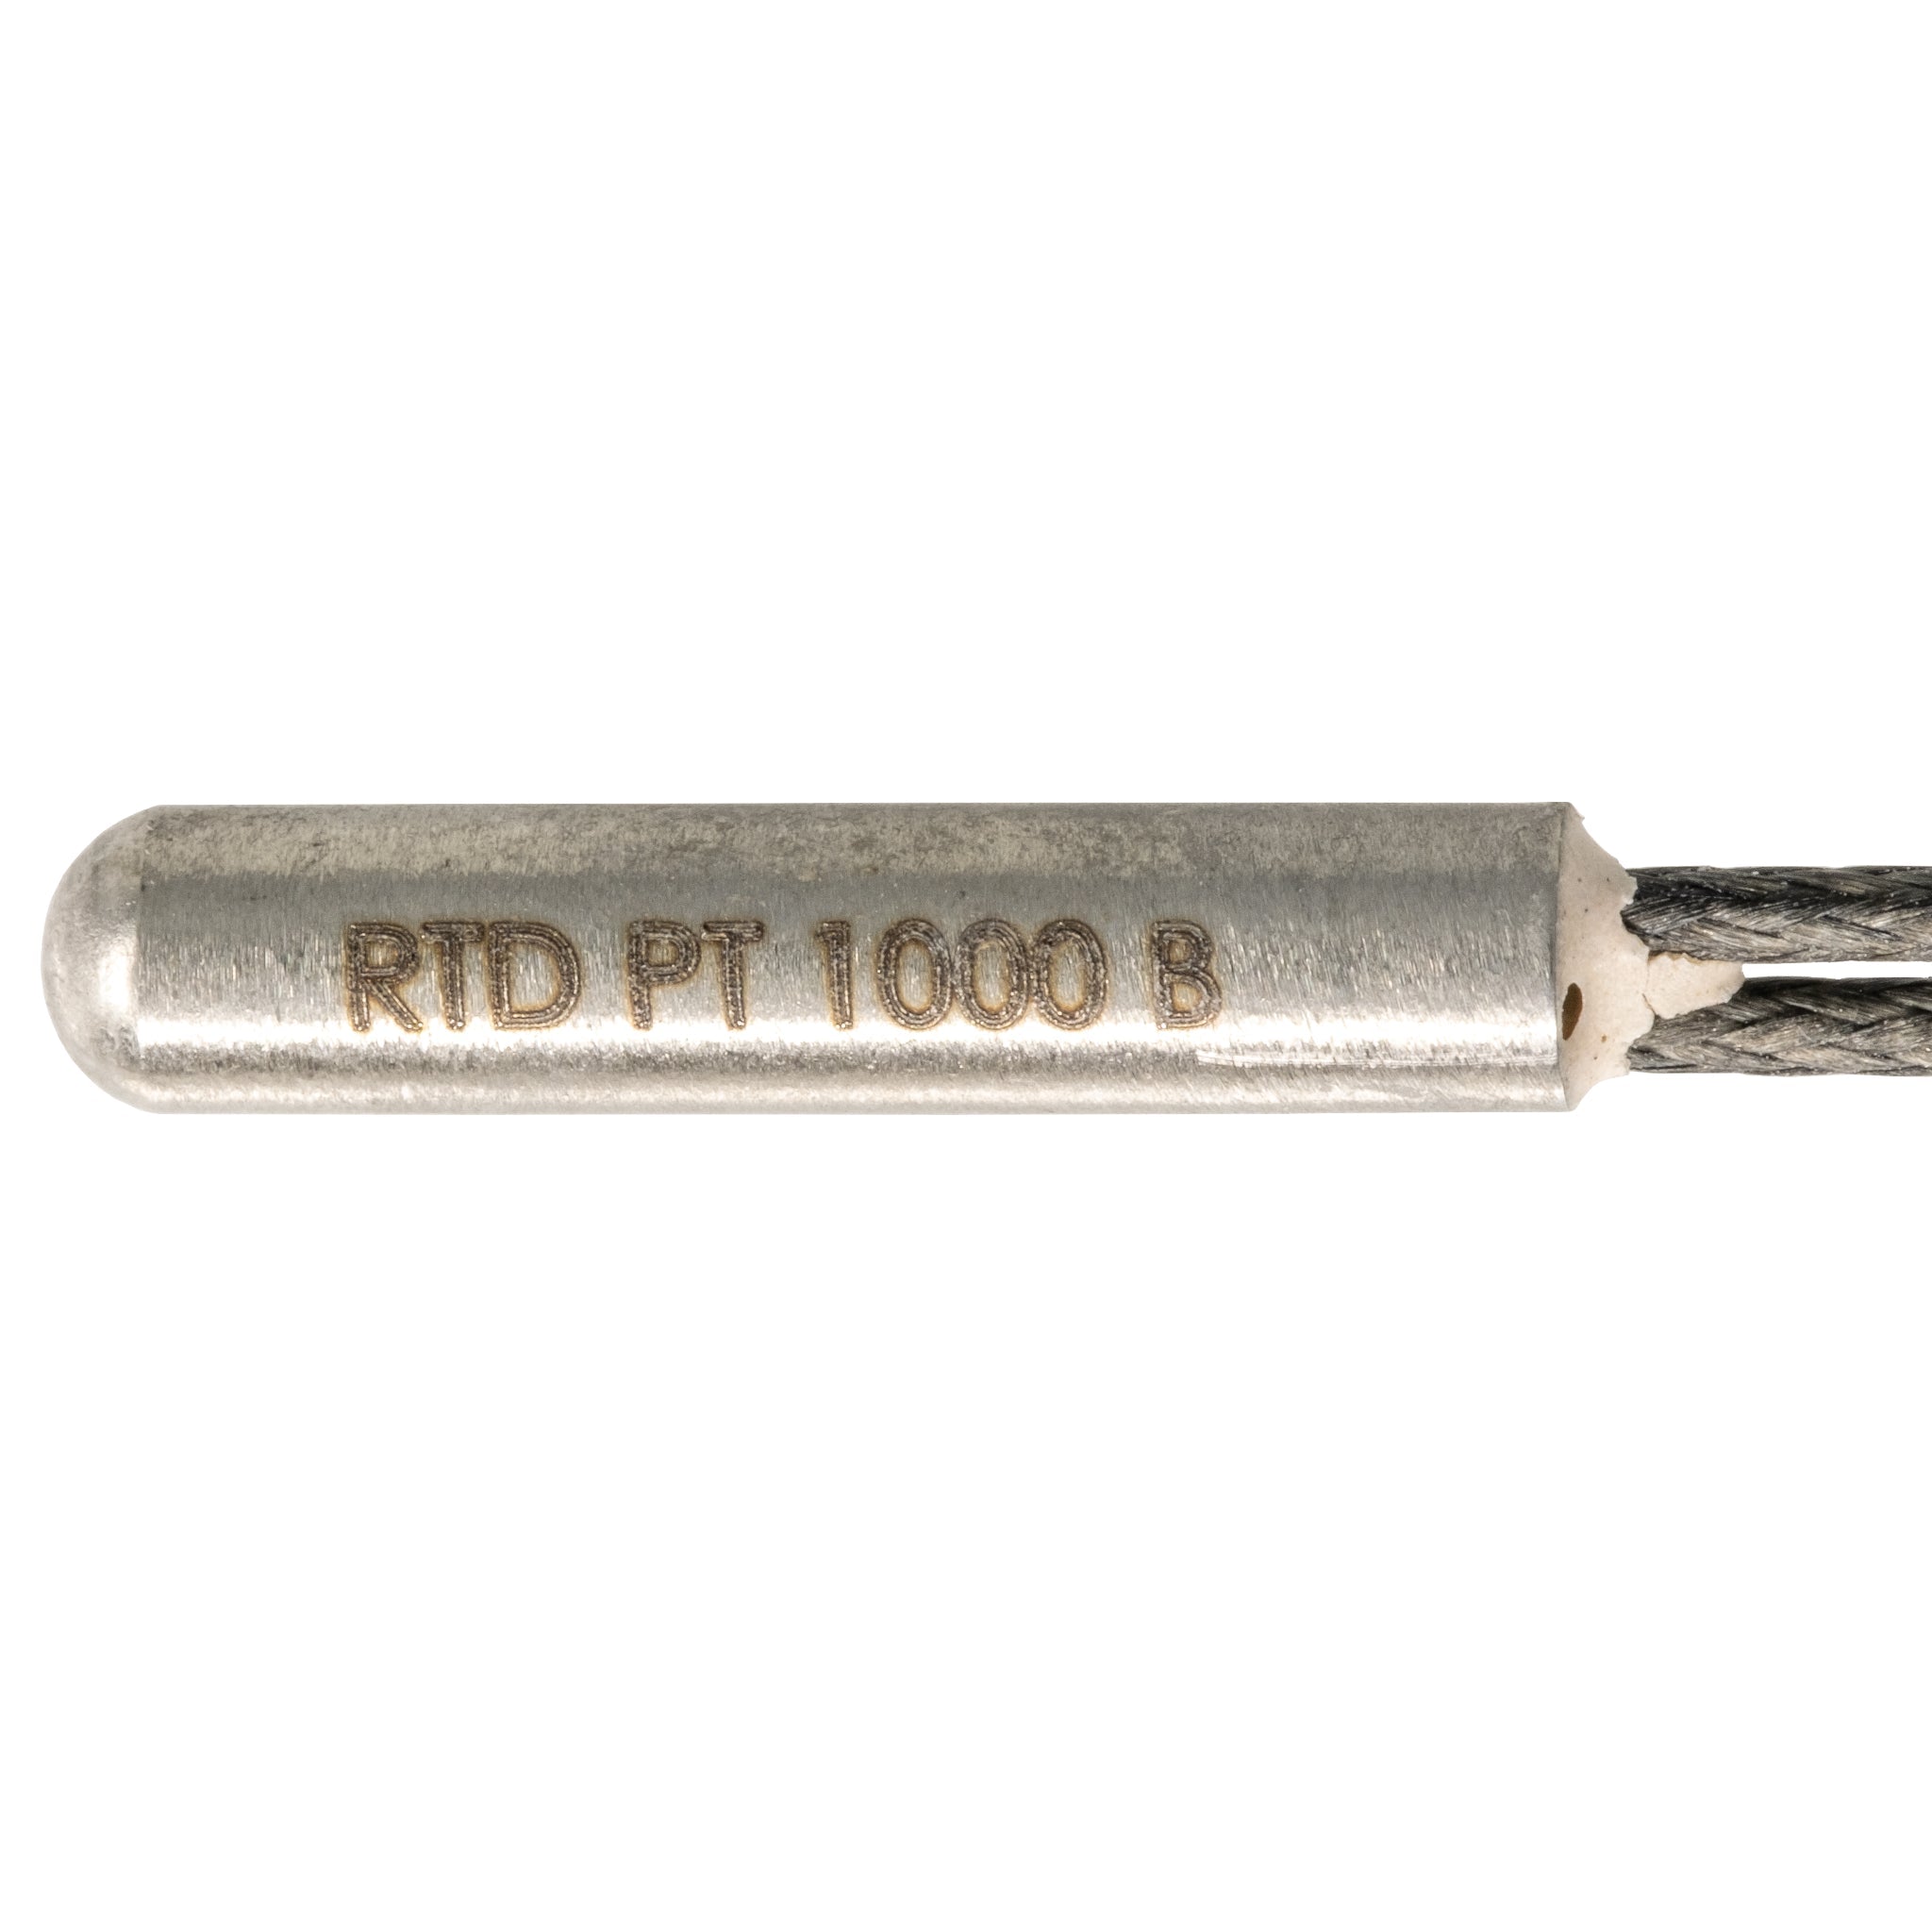 RTD-Pt1000